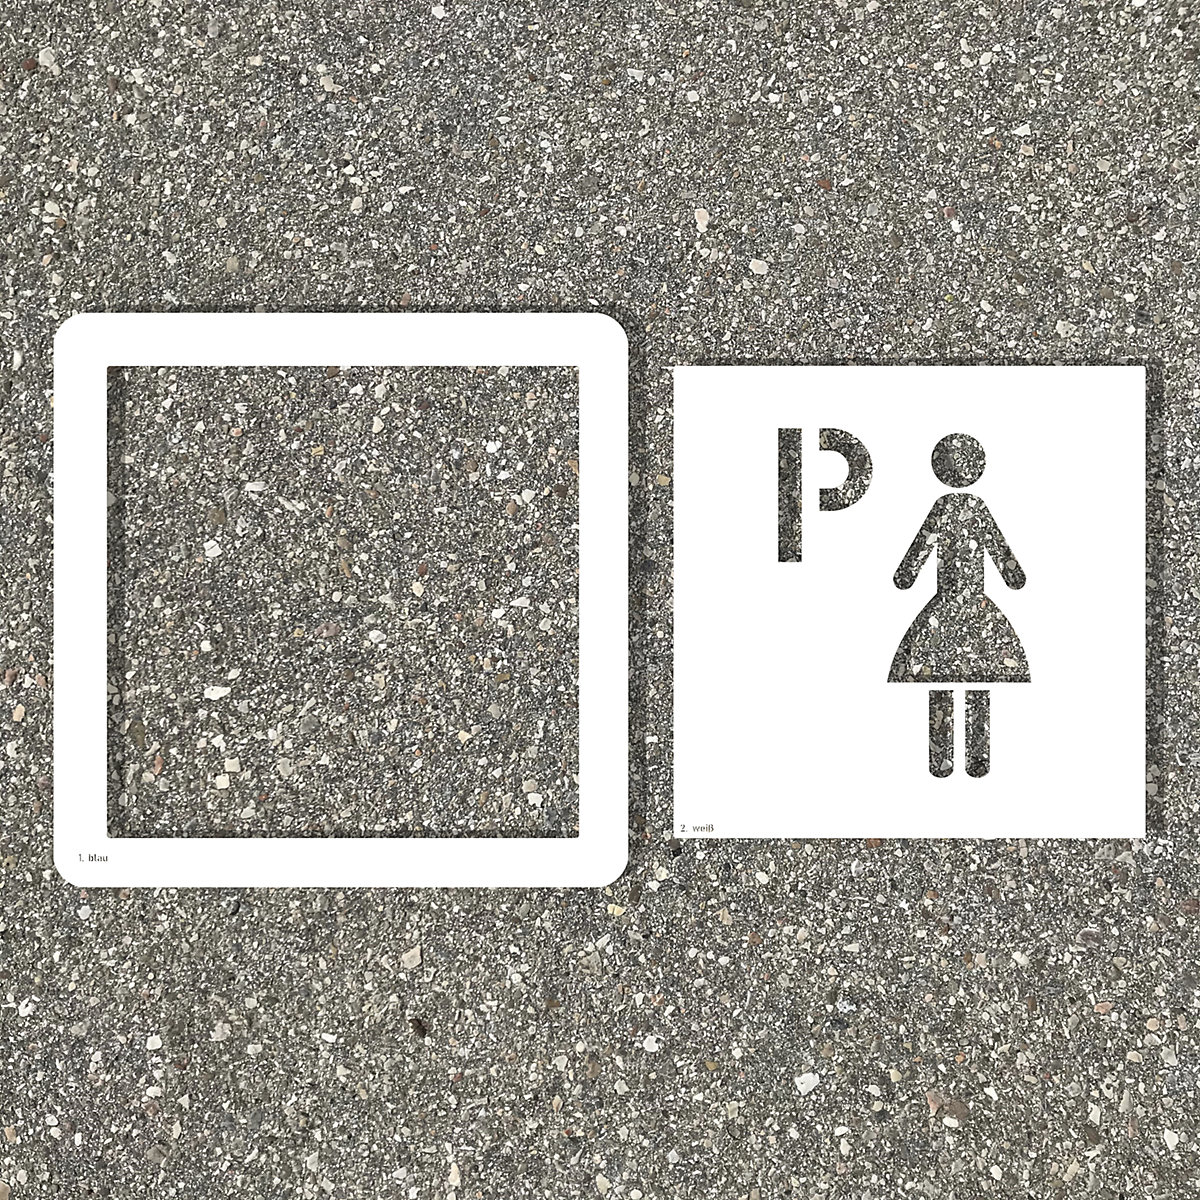 Gabarit de marquage des sols, parking pour femmes, plastique